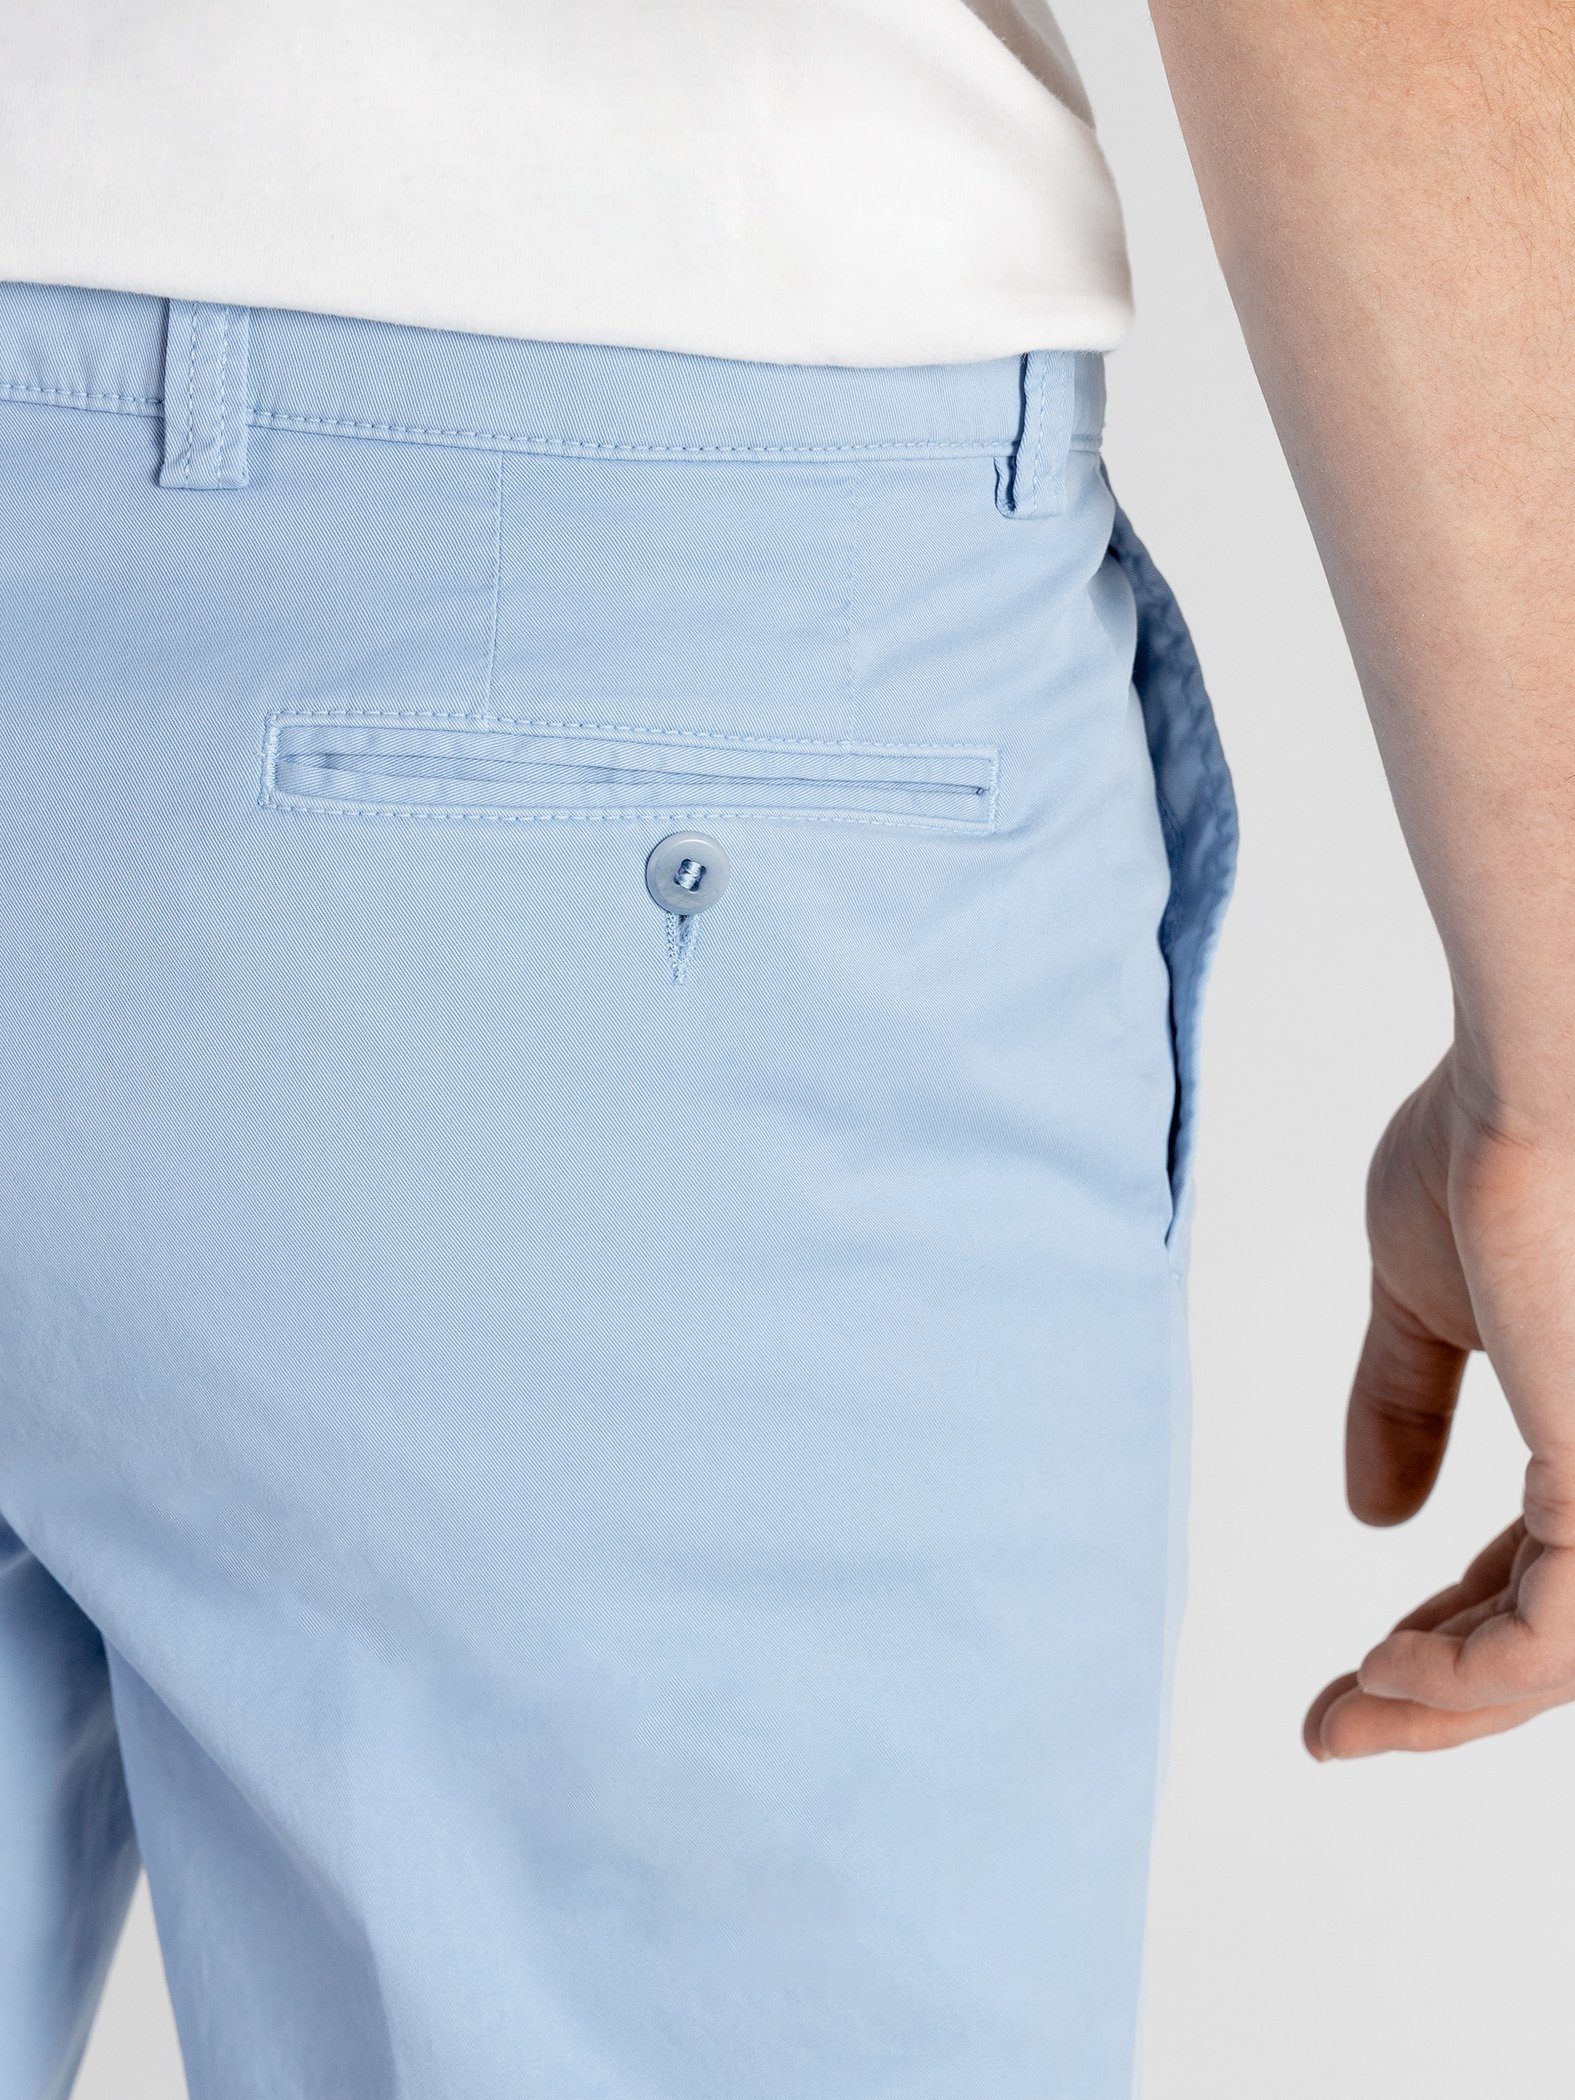 TwoMates Shorts Shorts mit elastischem Farbauswahl, Bund, GOTS-zertifiziert hellblau